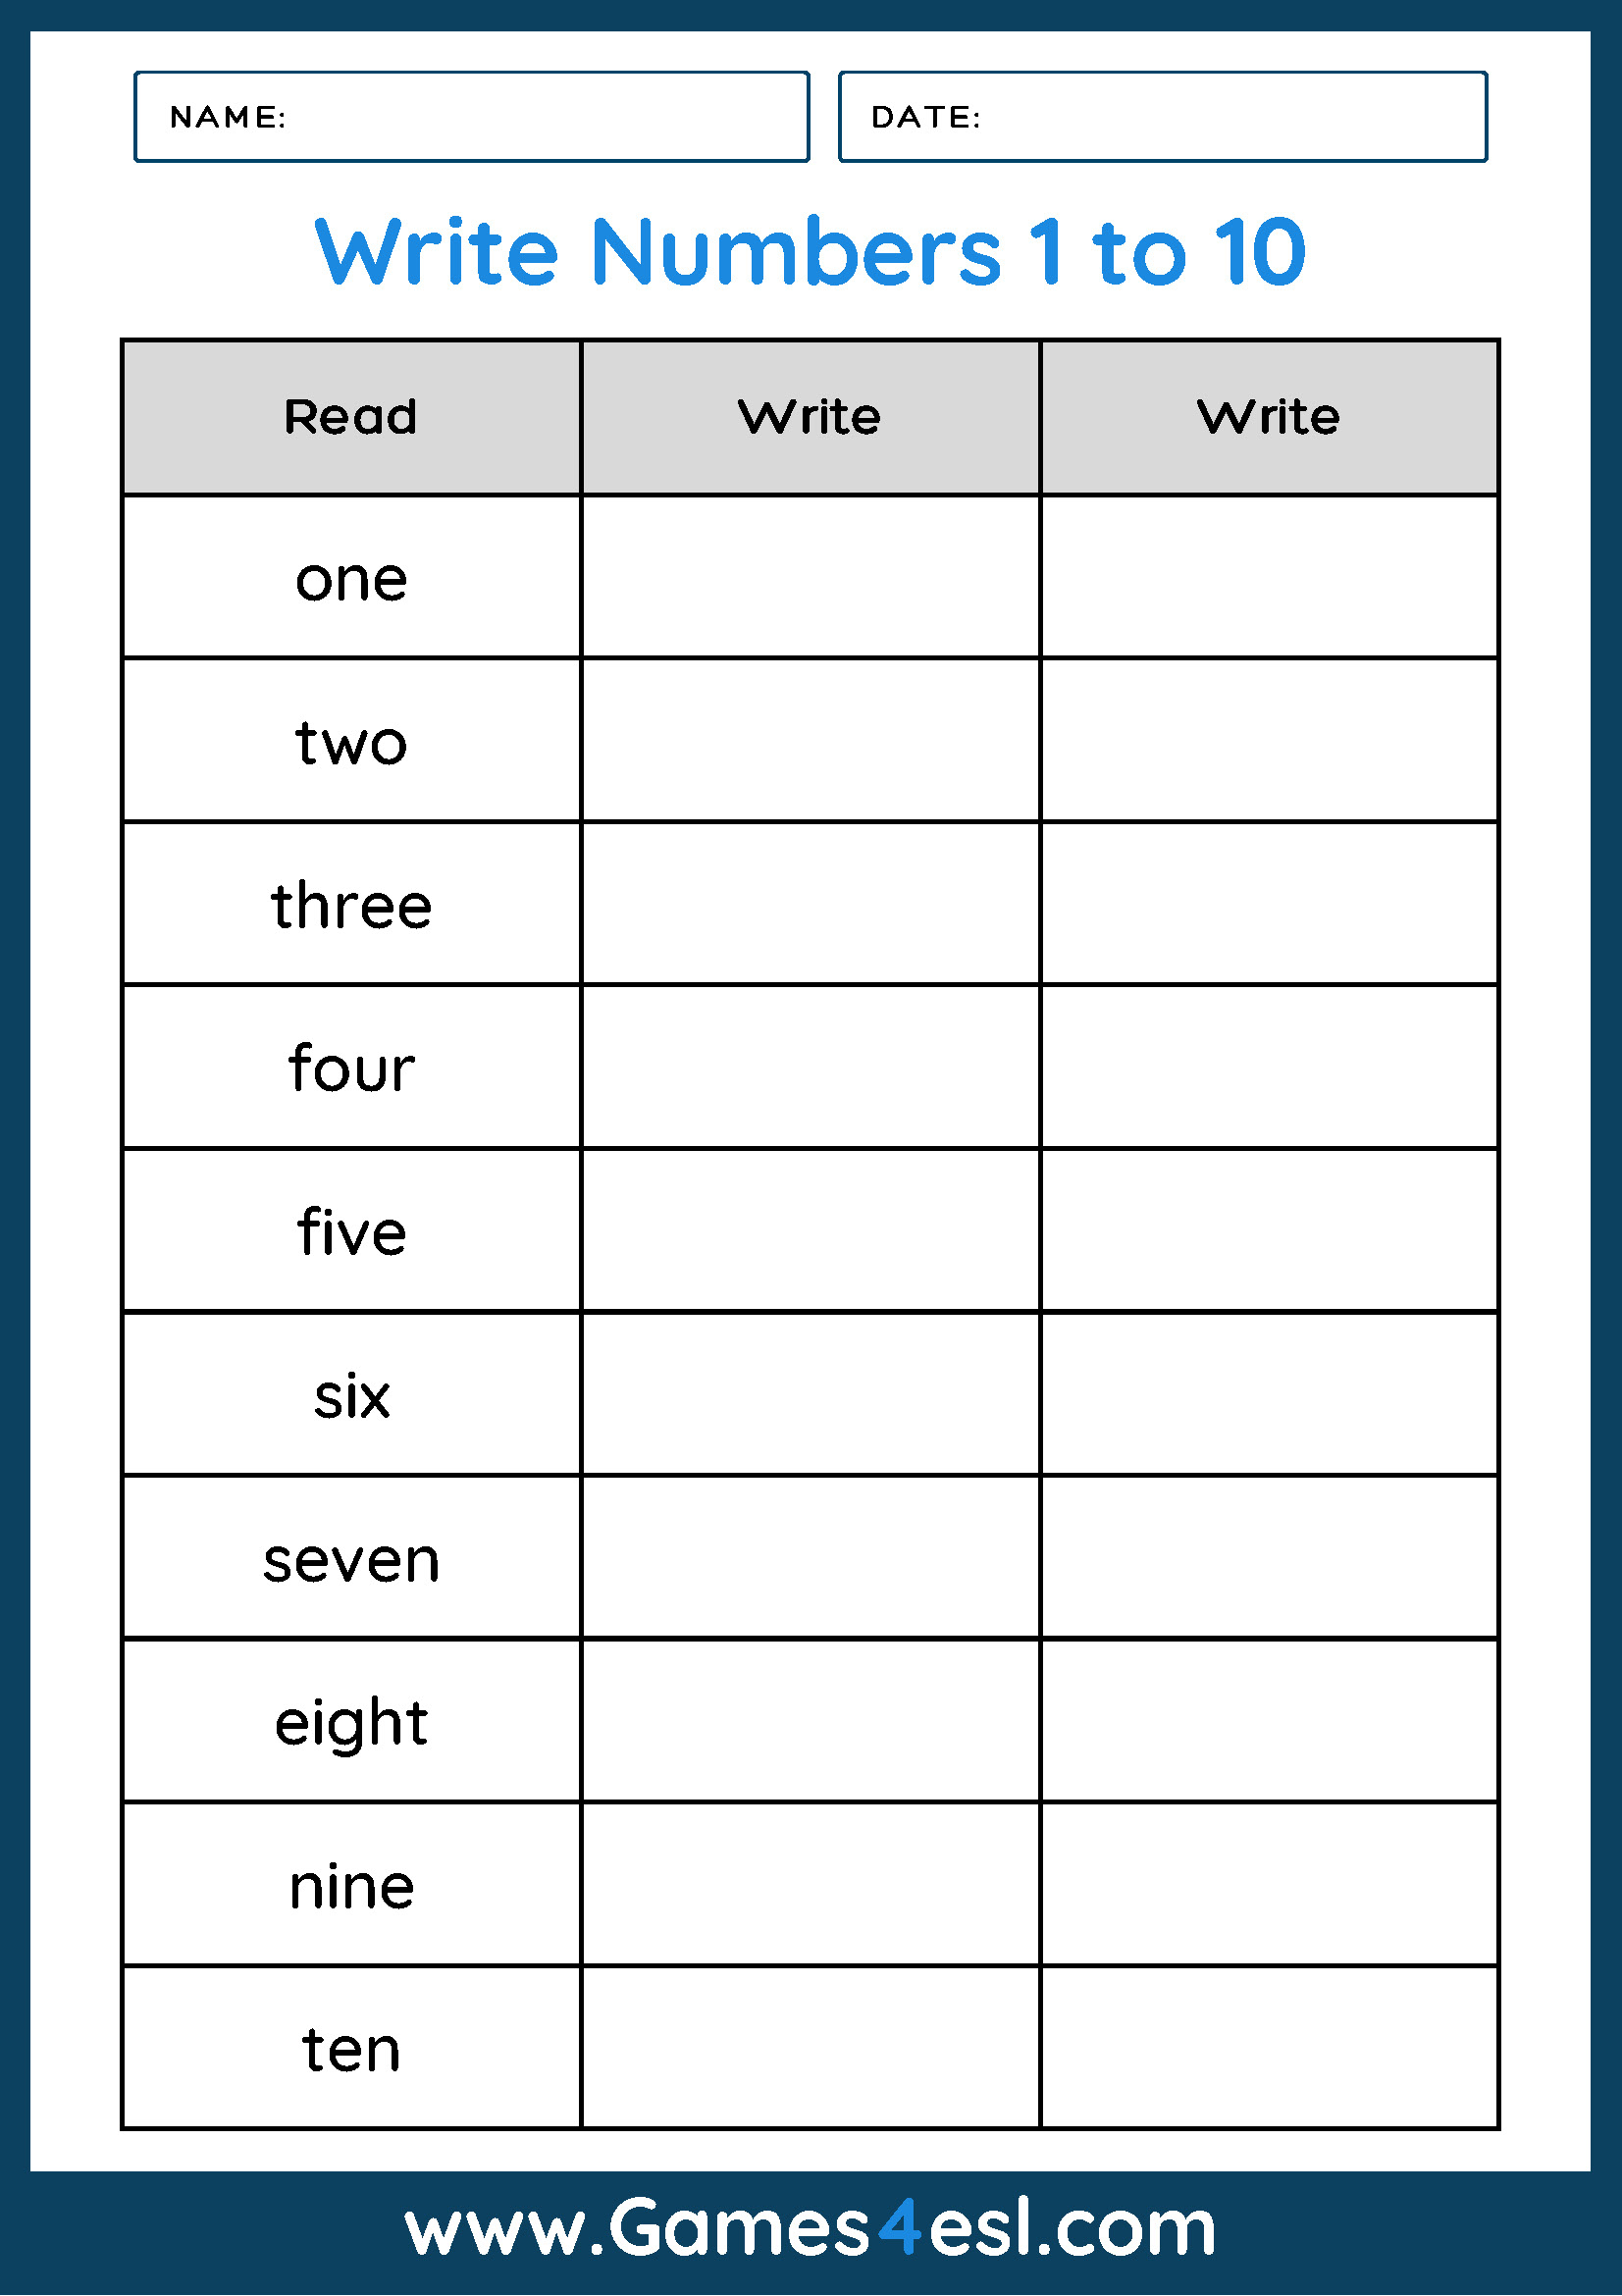 Numbers 1 to 10 as words worksheet